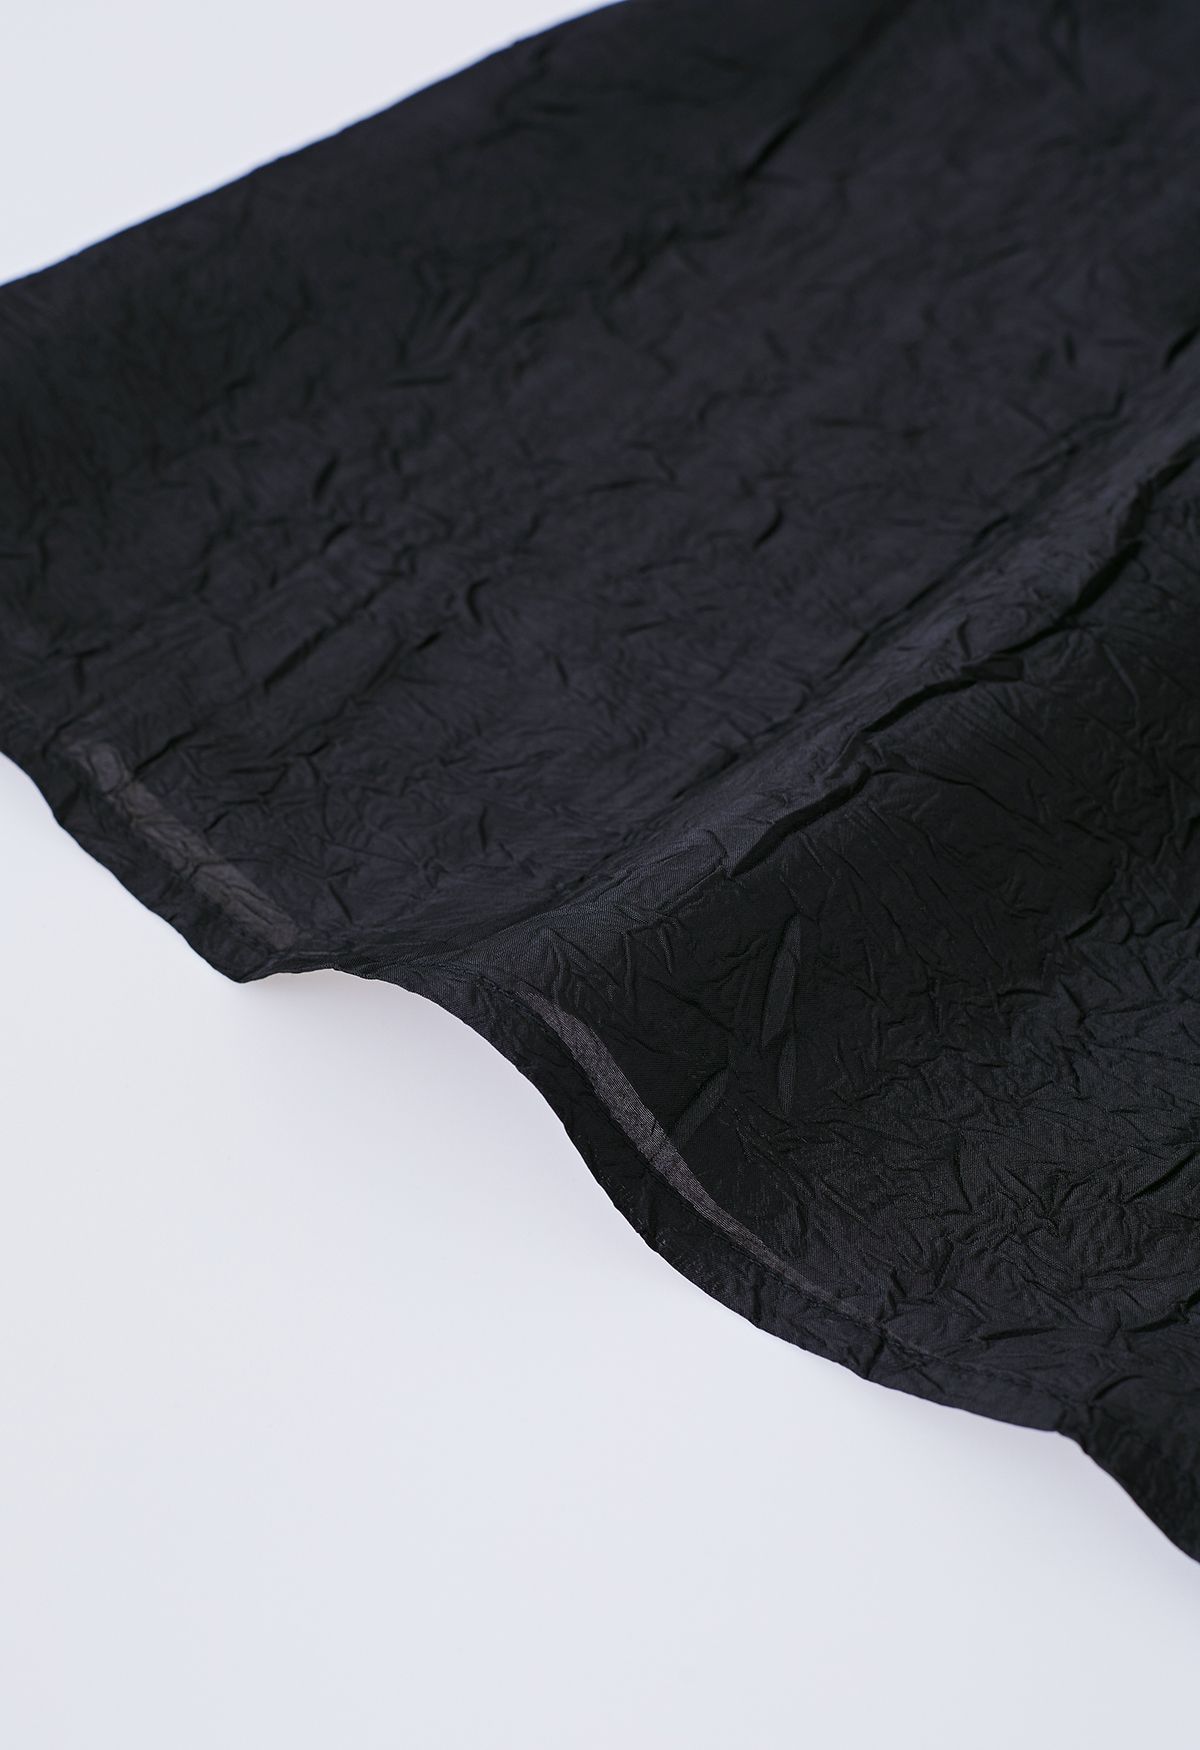 Ärmelloses Kleid mit gespleißter Struktur in Schwarz